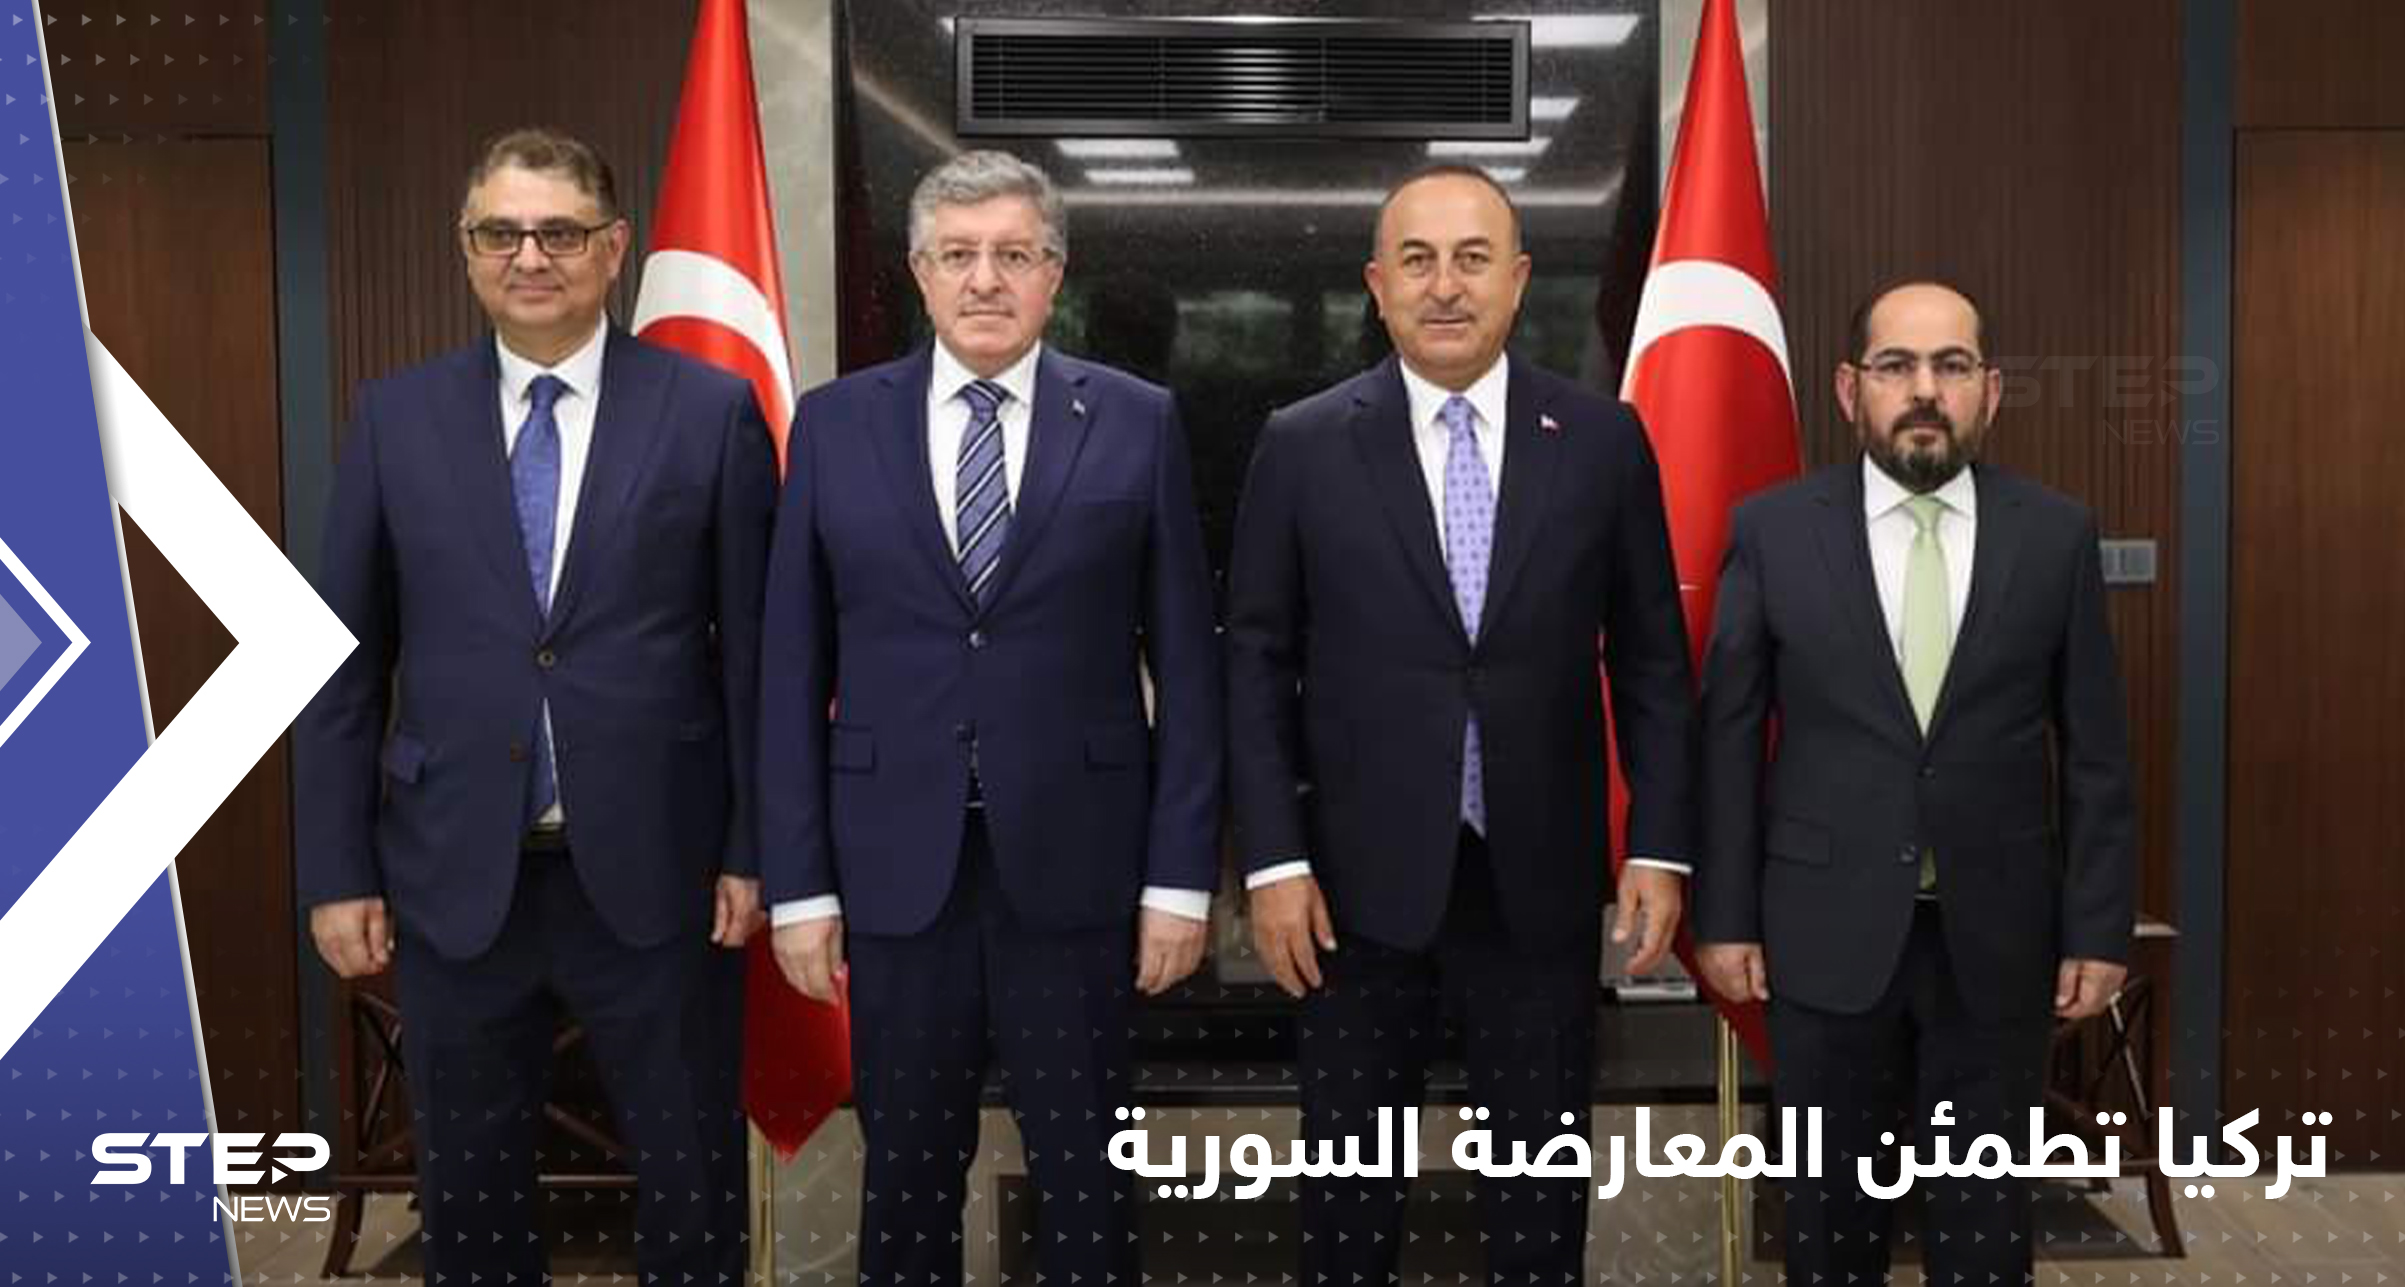 بعد تقرّبها من دمشق، تركيا تجتمع مع المعارضة السورية وتقصف نقاط للنظام بريف حلب